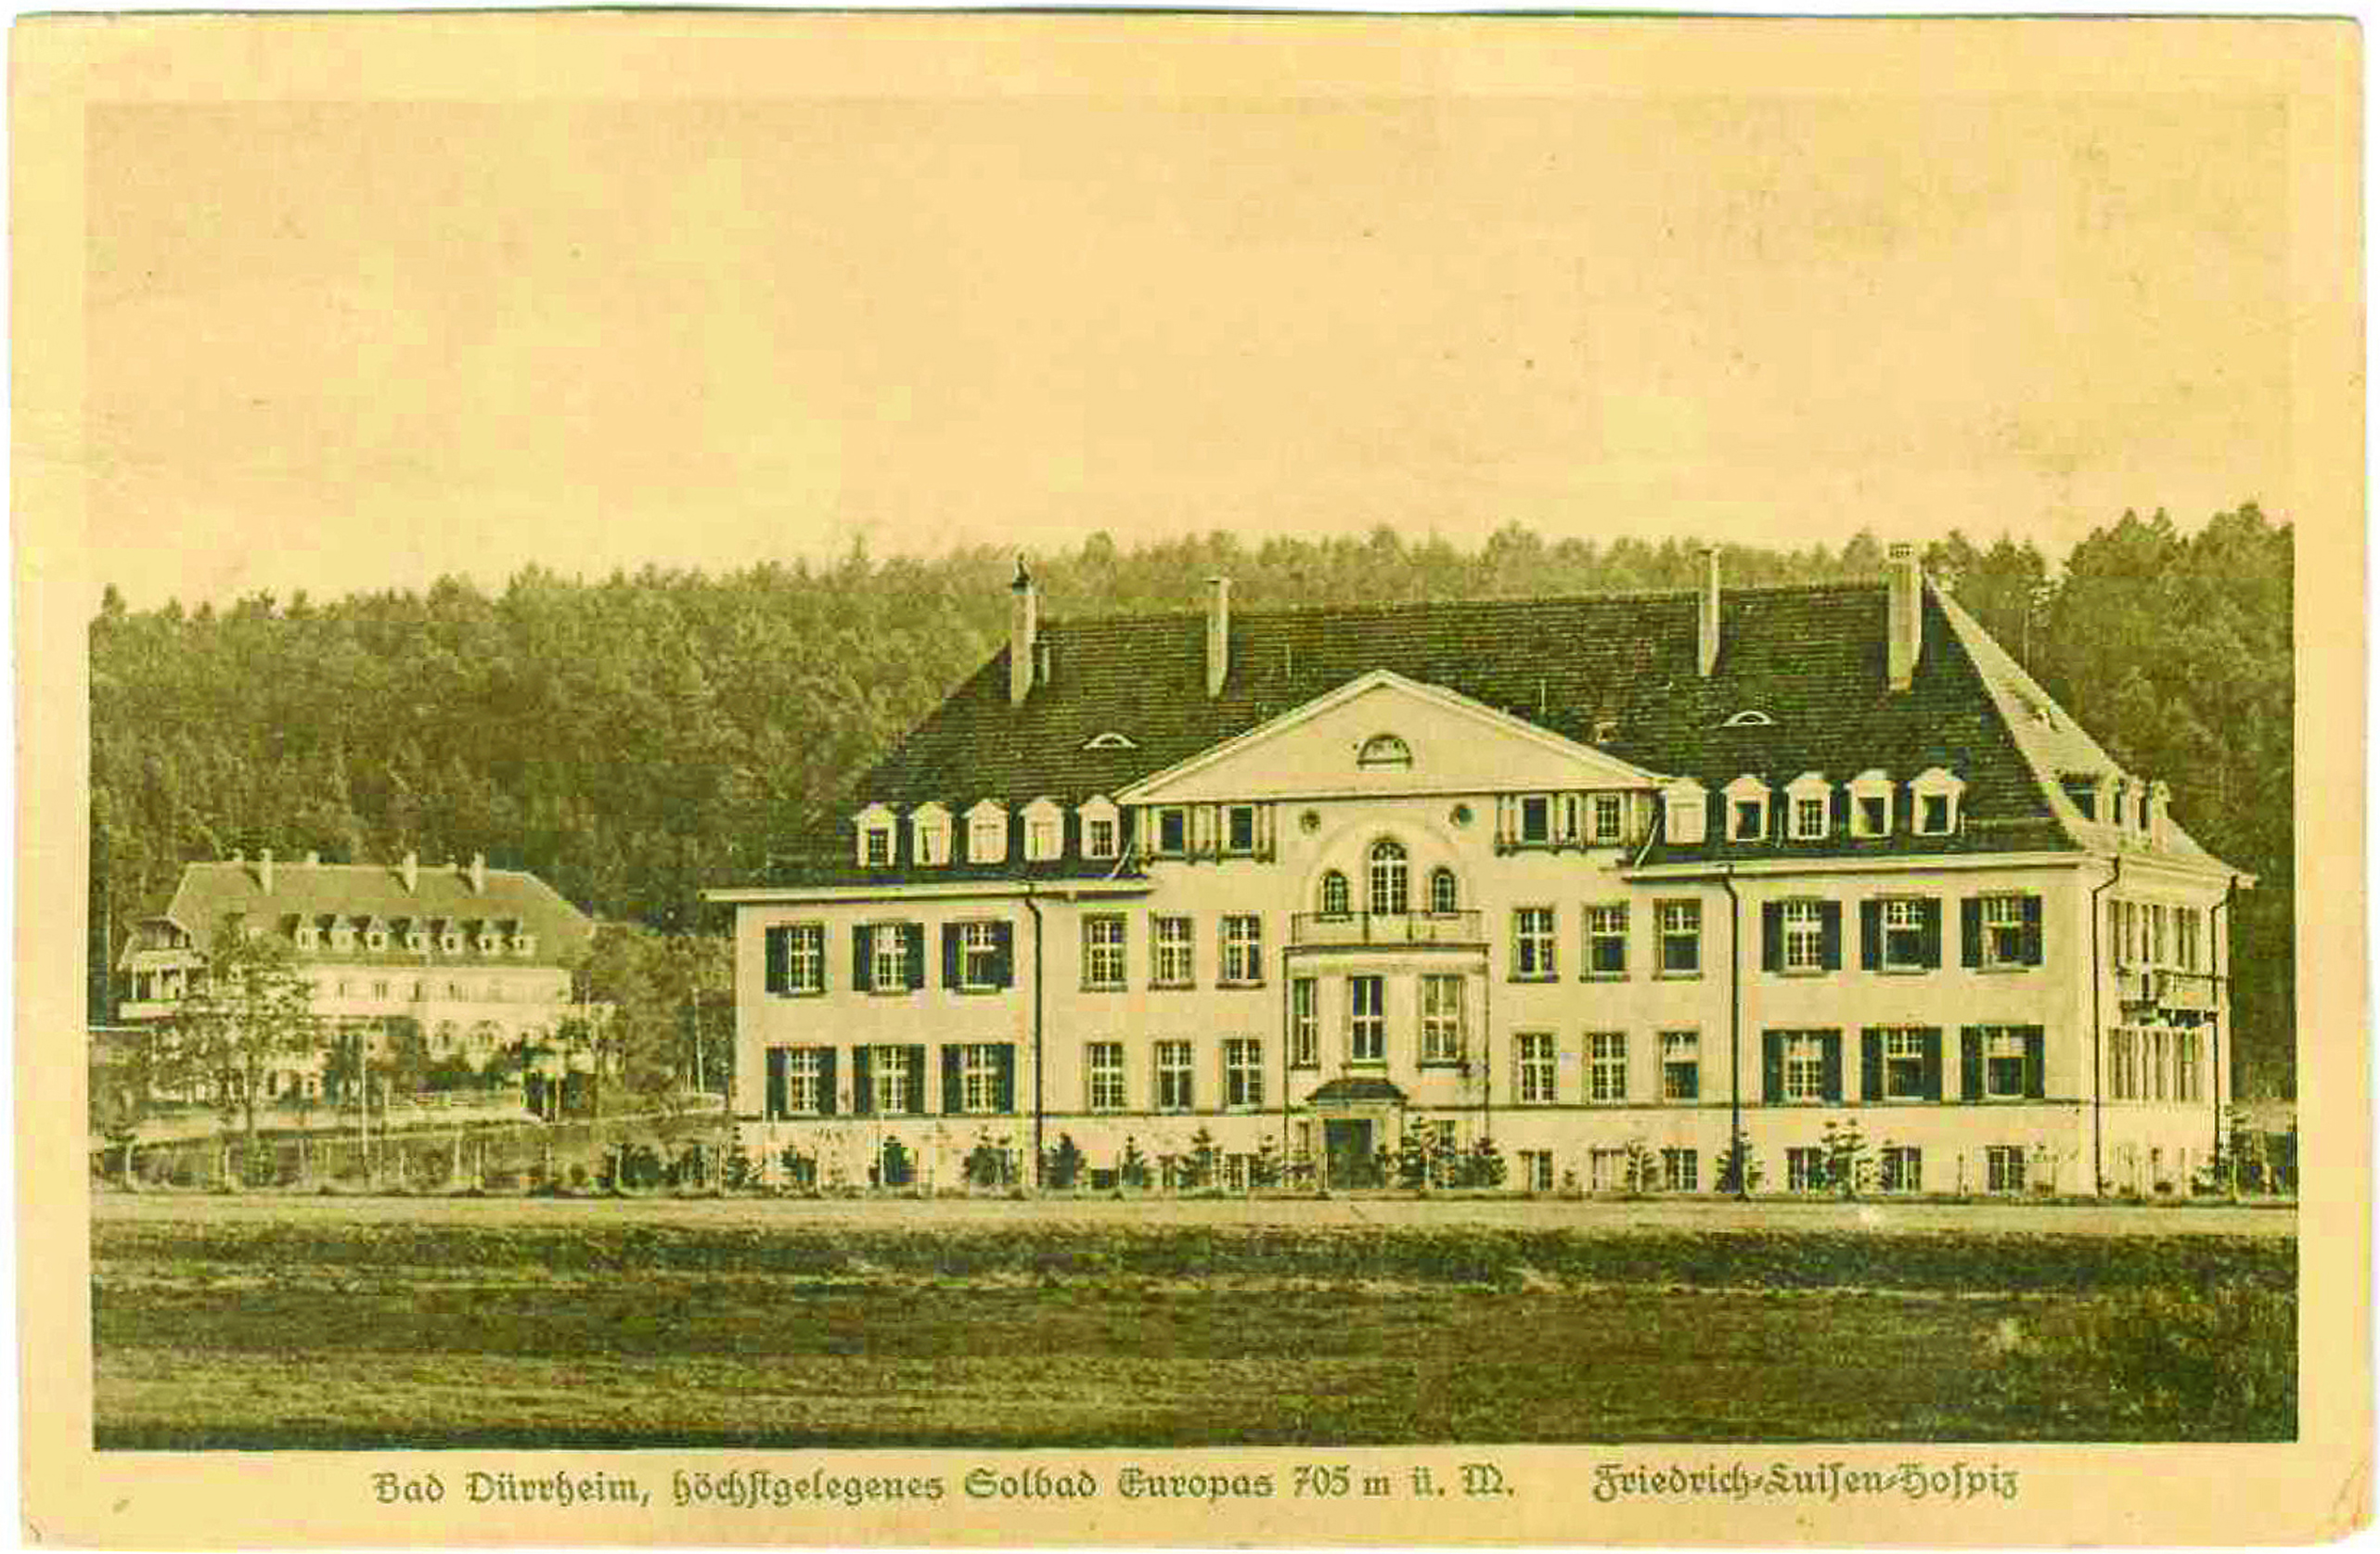 The Friedrich-Luisen-Hospice in Bad Dürrheim on an old postcard.